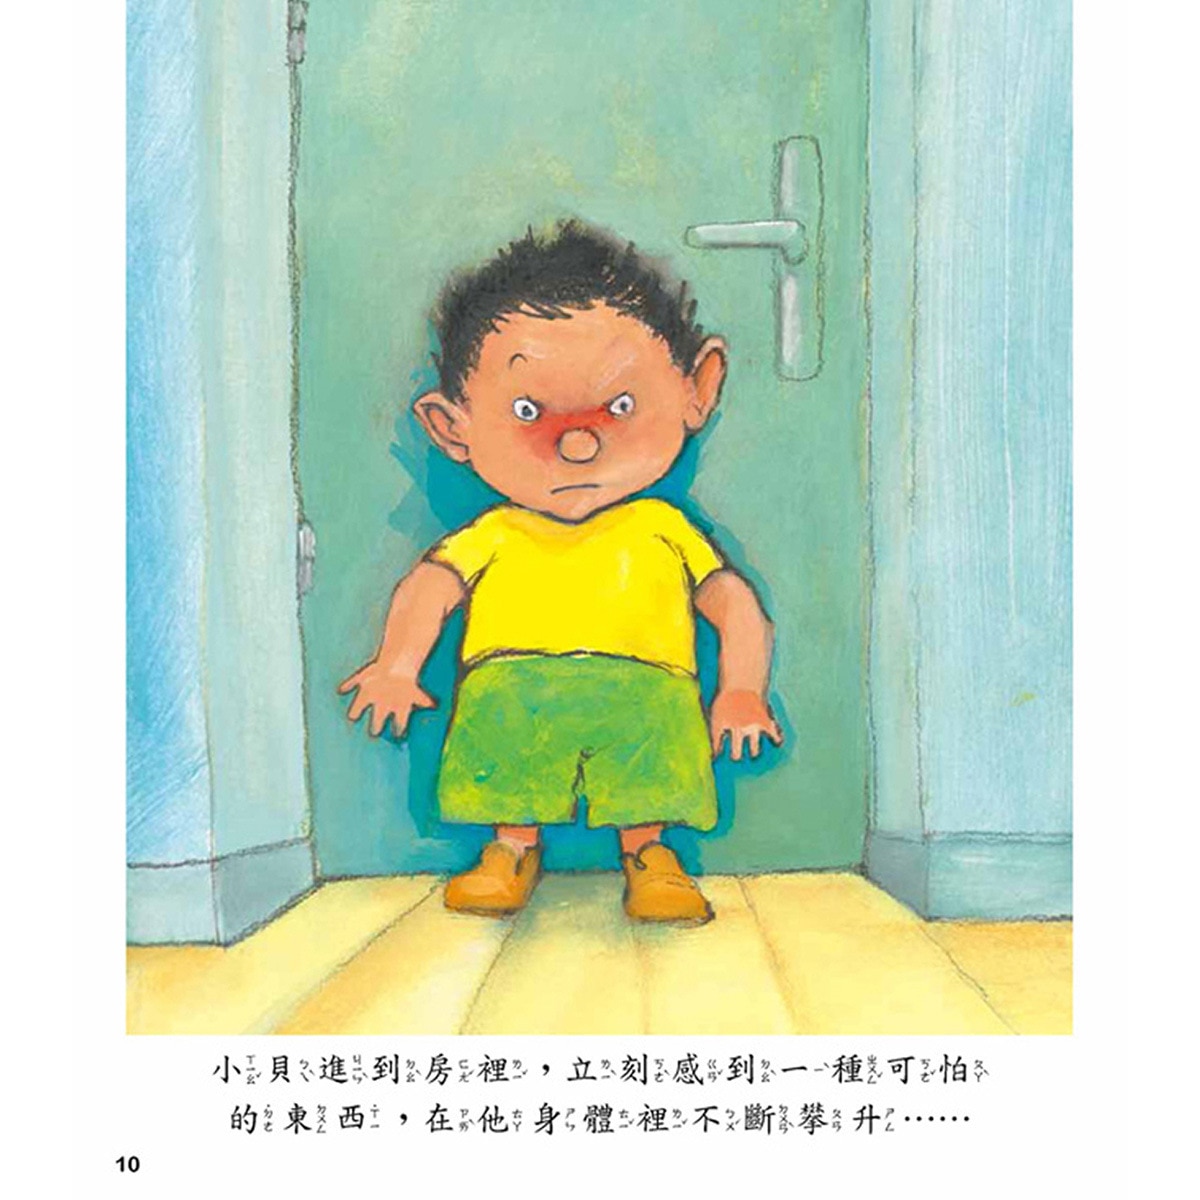 關愛孩子的情緒行為繪本套書 (5冊)